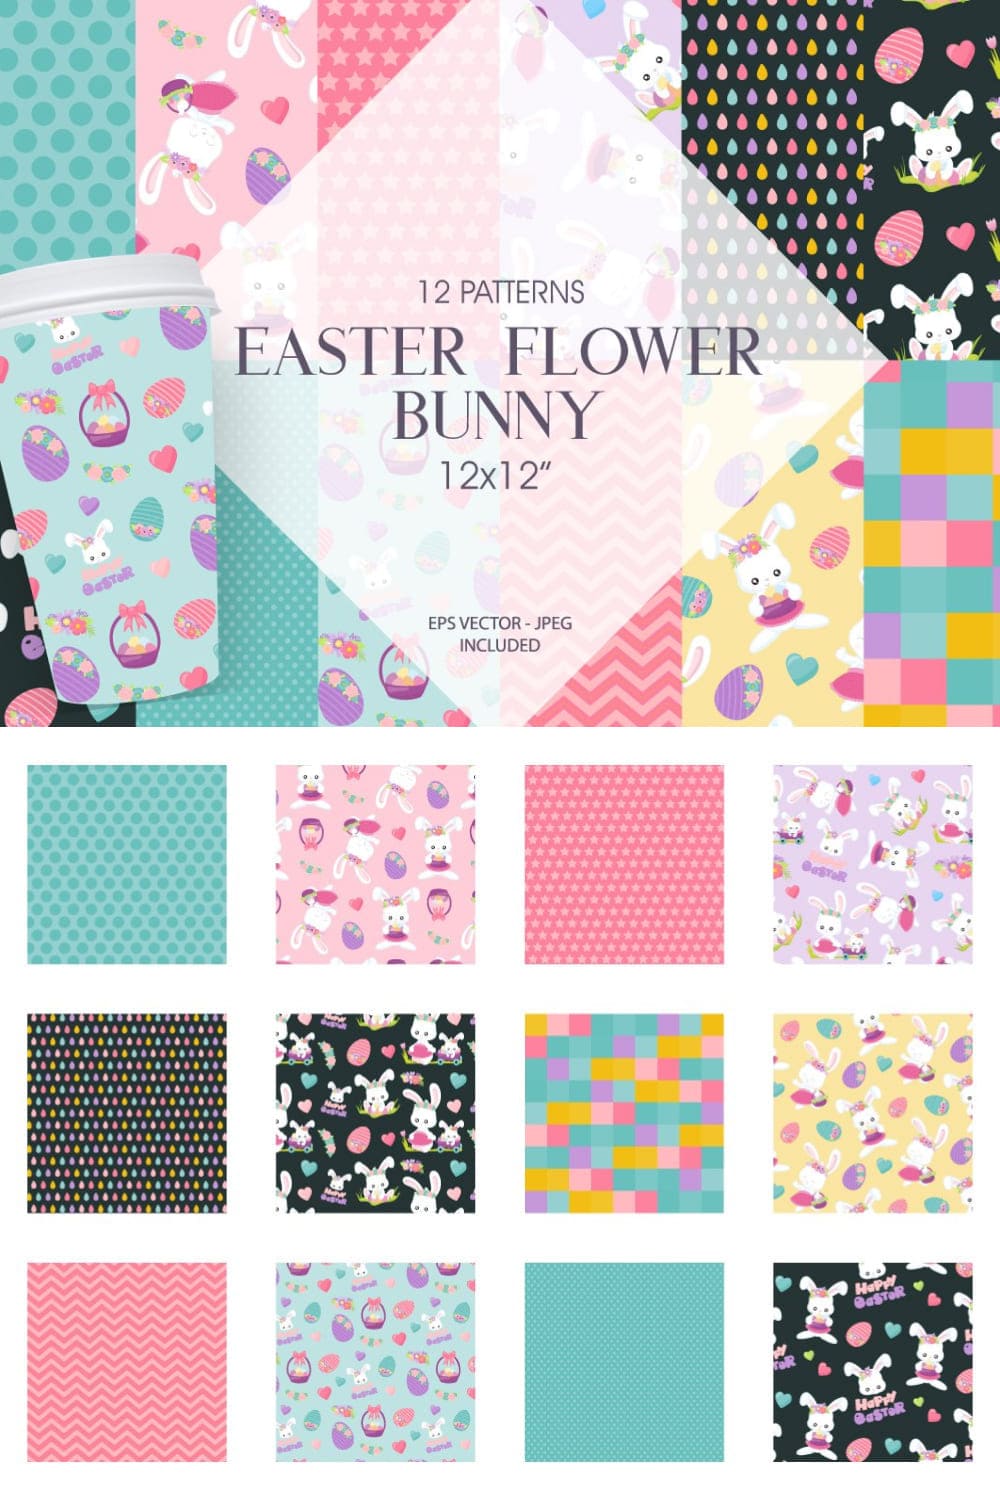 Easter Flower Bunny - Pinterest.